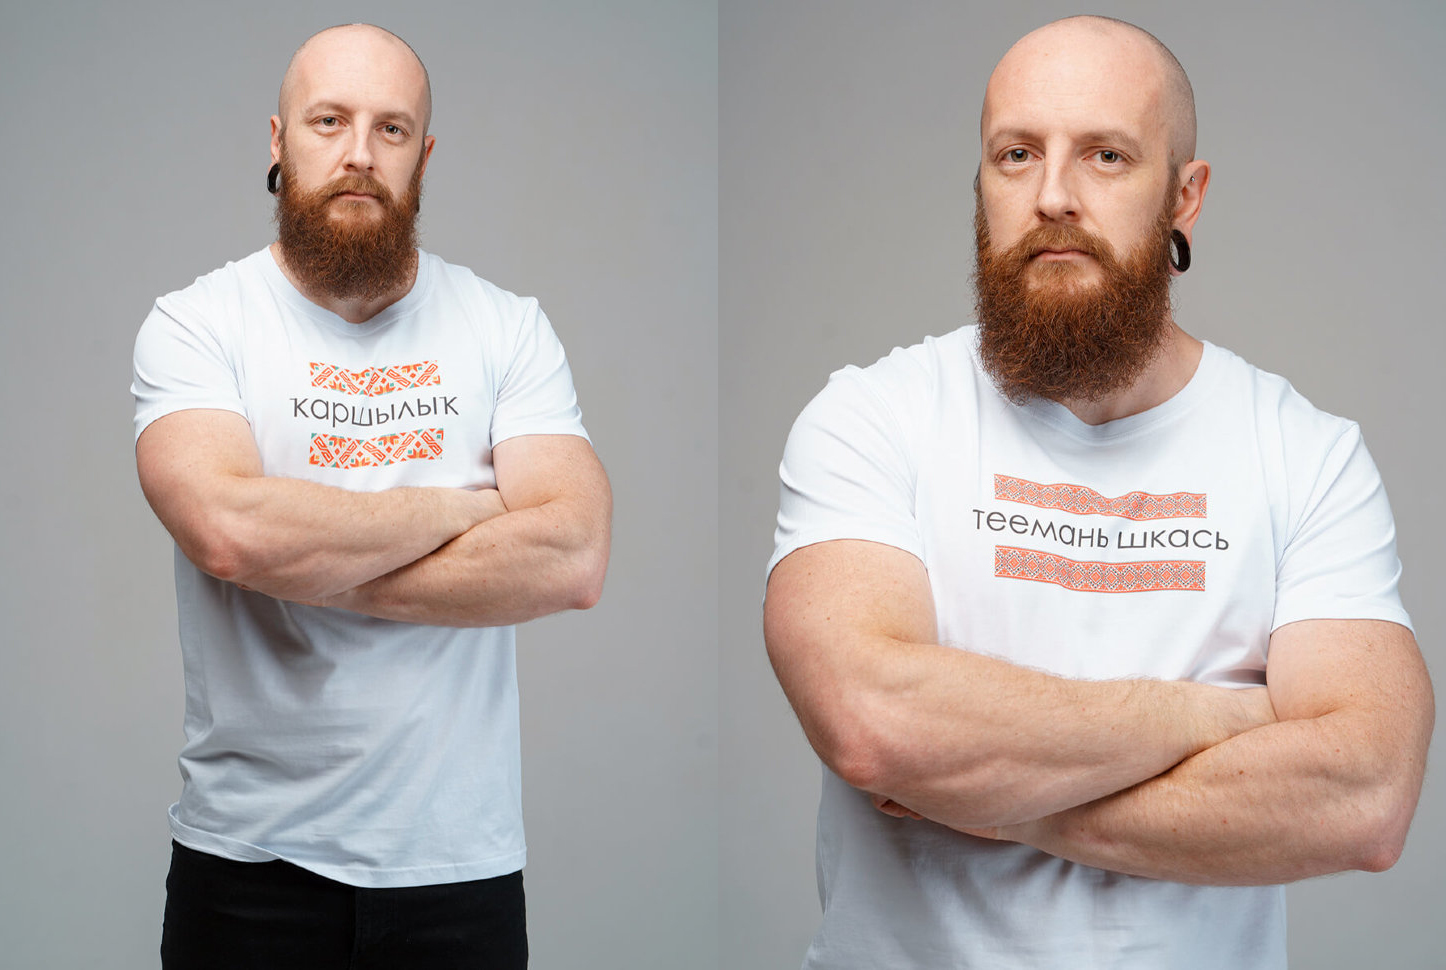 Protestore выпустил коллекцию футболок на языках Идель-Урала